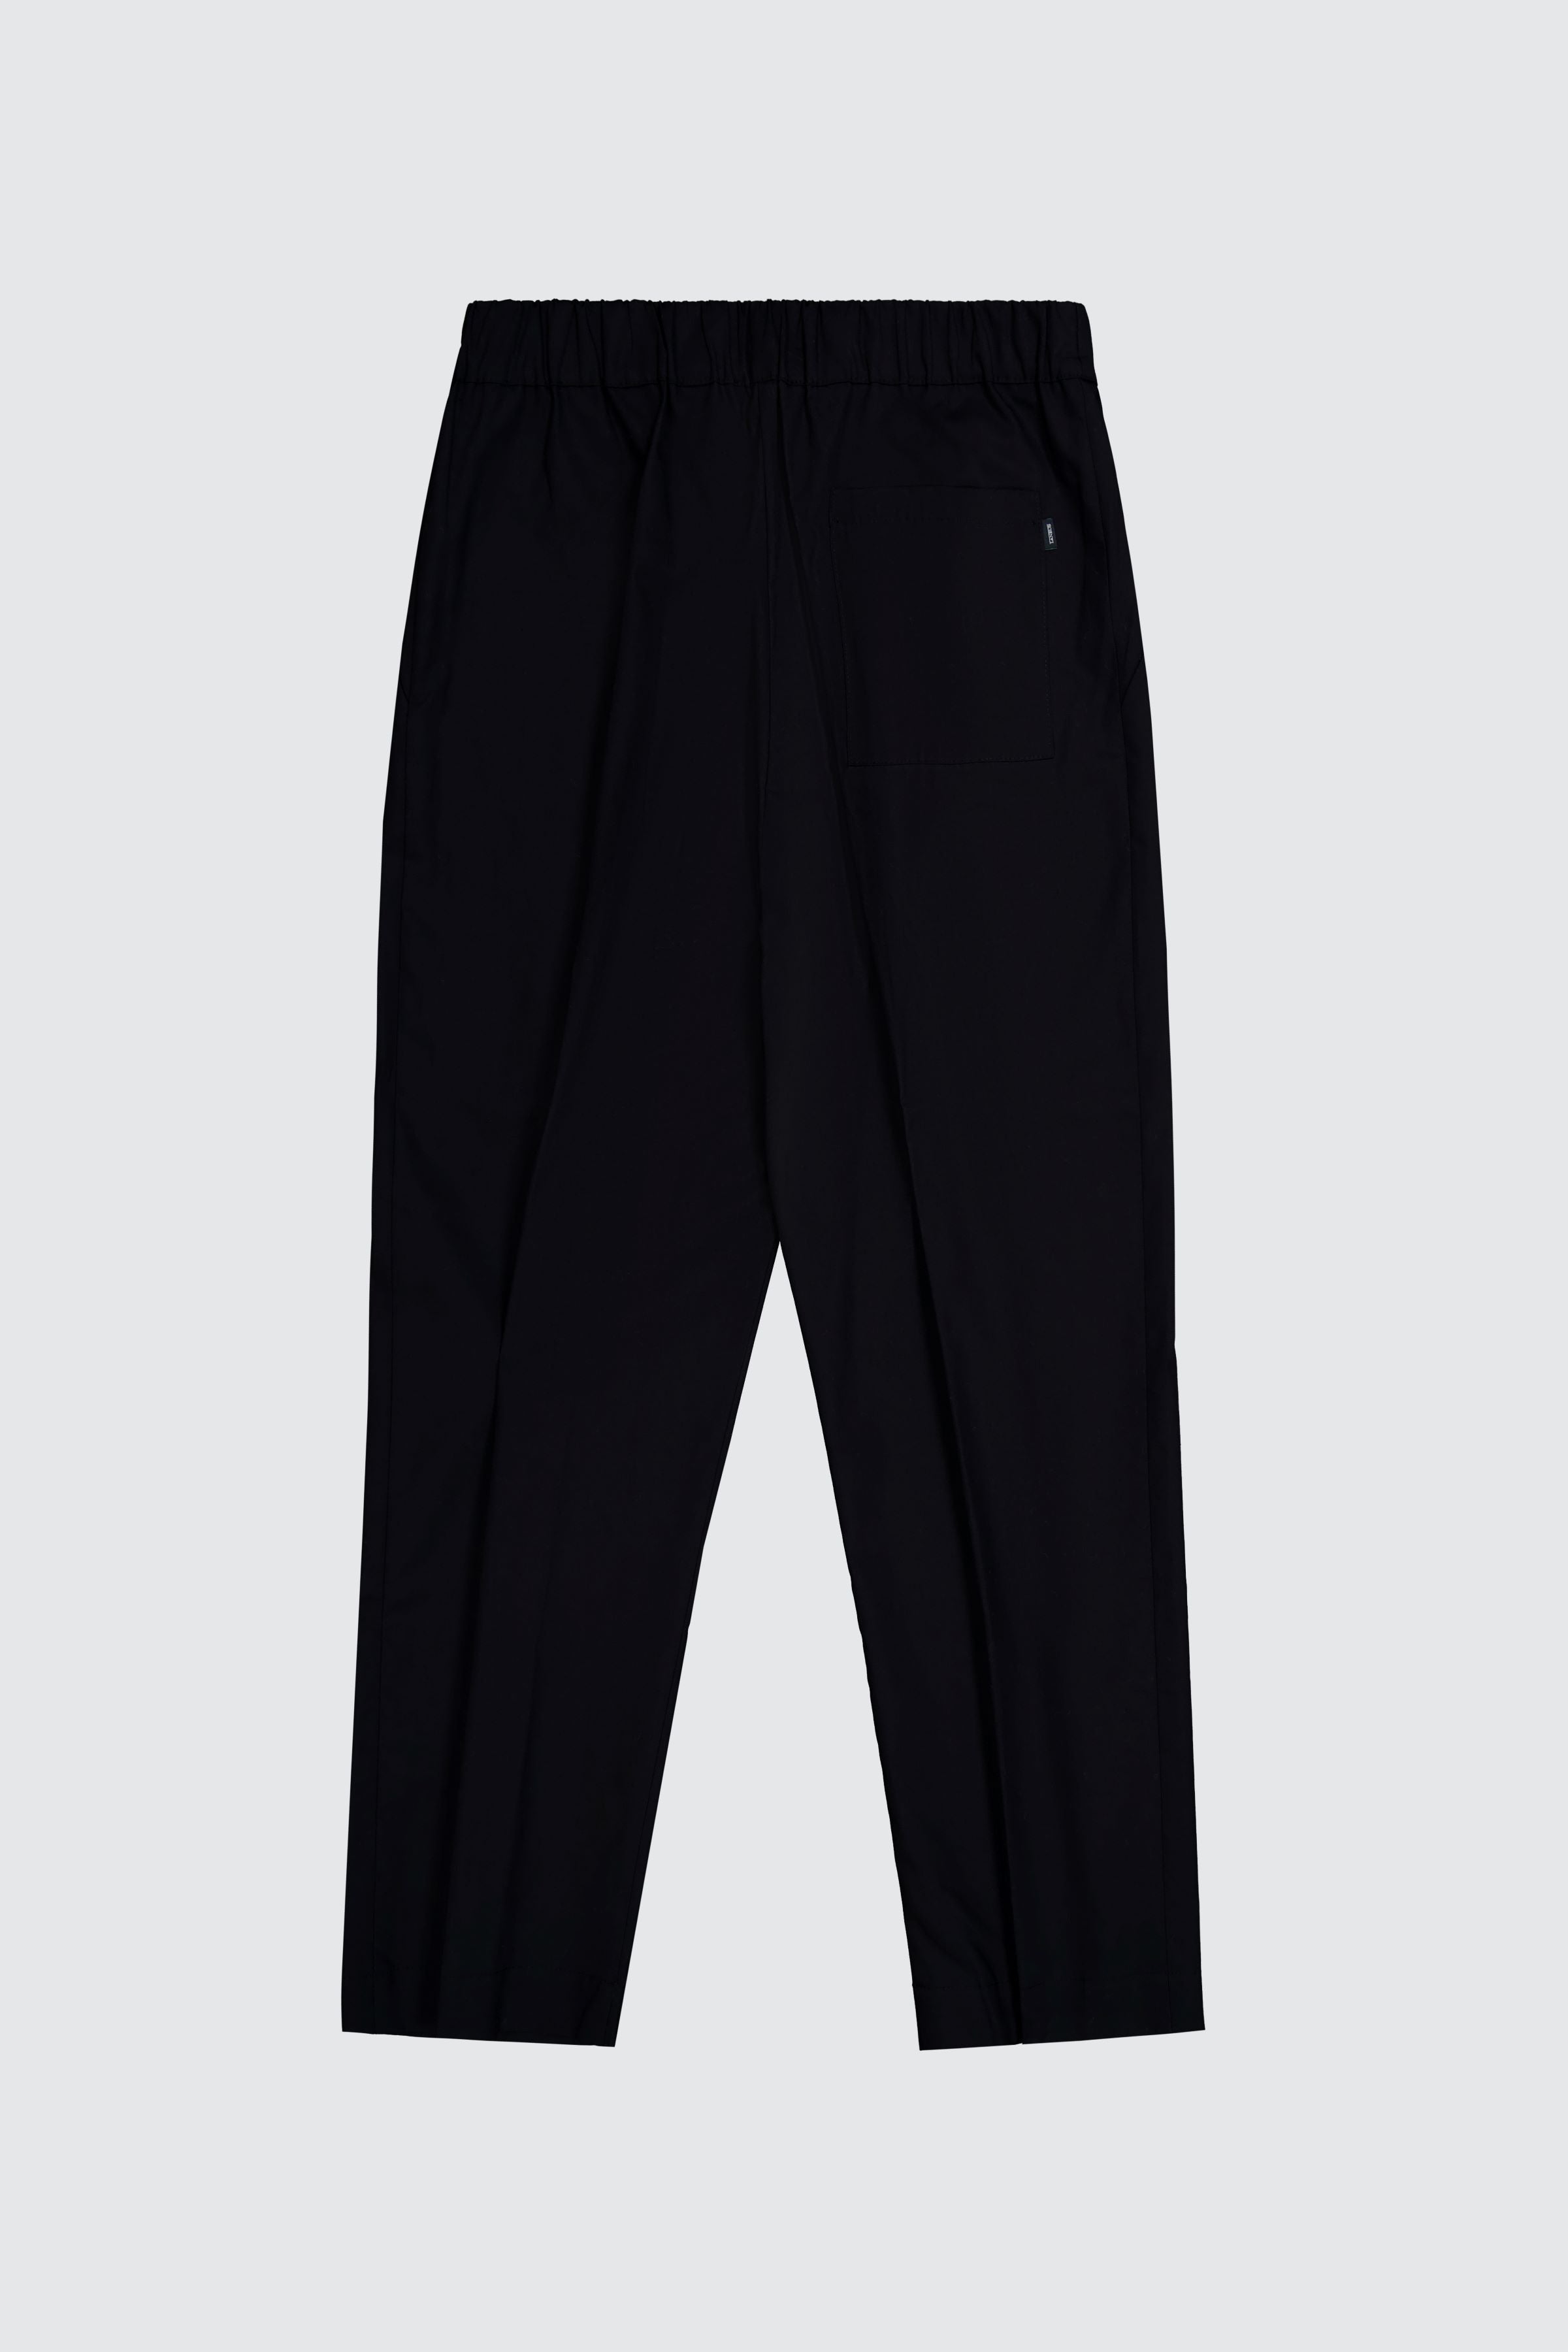 Laneus pantalone black dal fit oversize